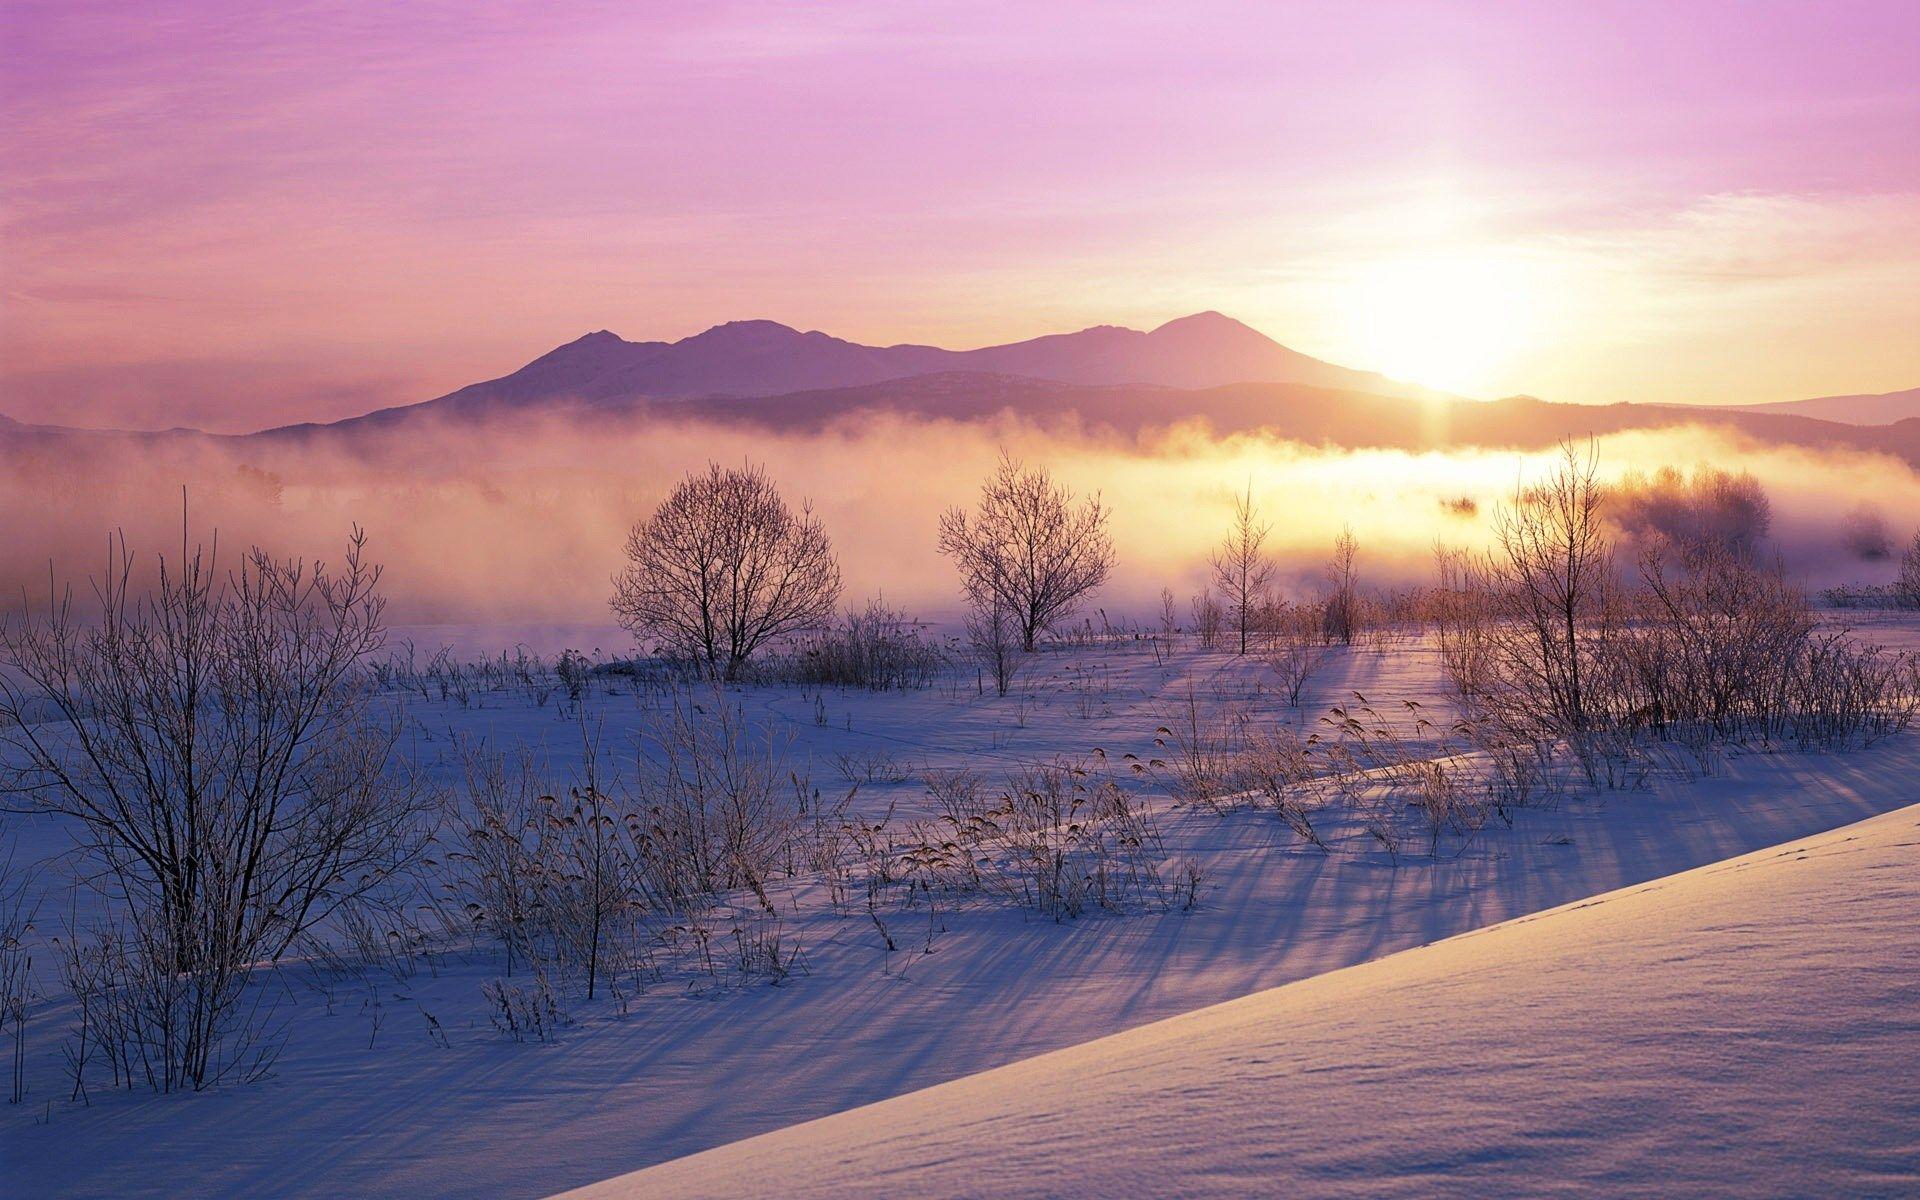 雪うさぎ (Snowy dawn landscape near Hokkaido, Japan)